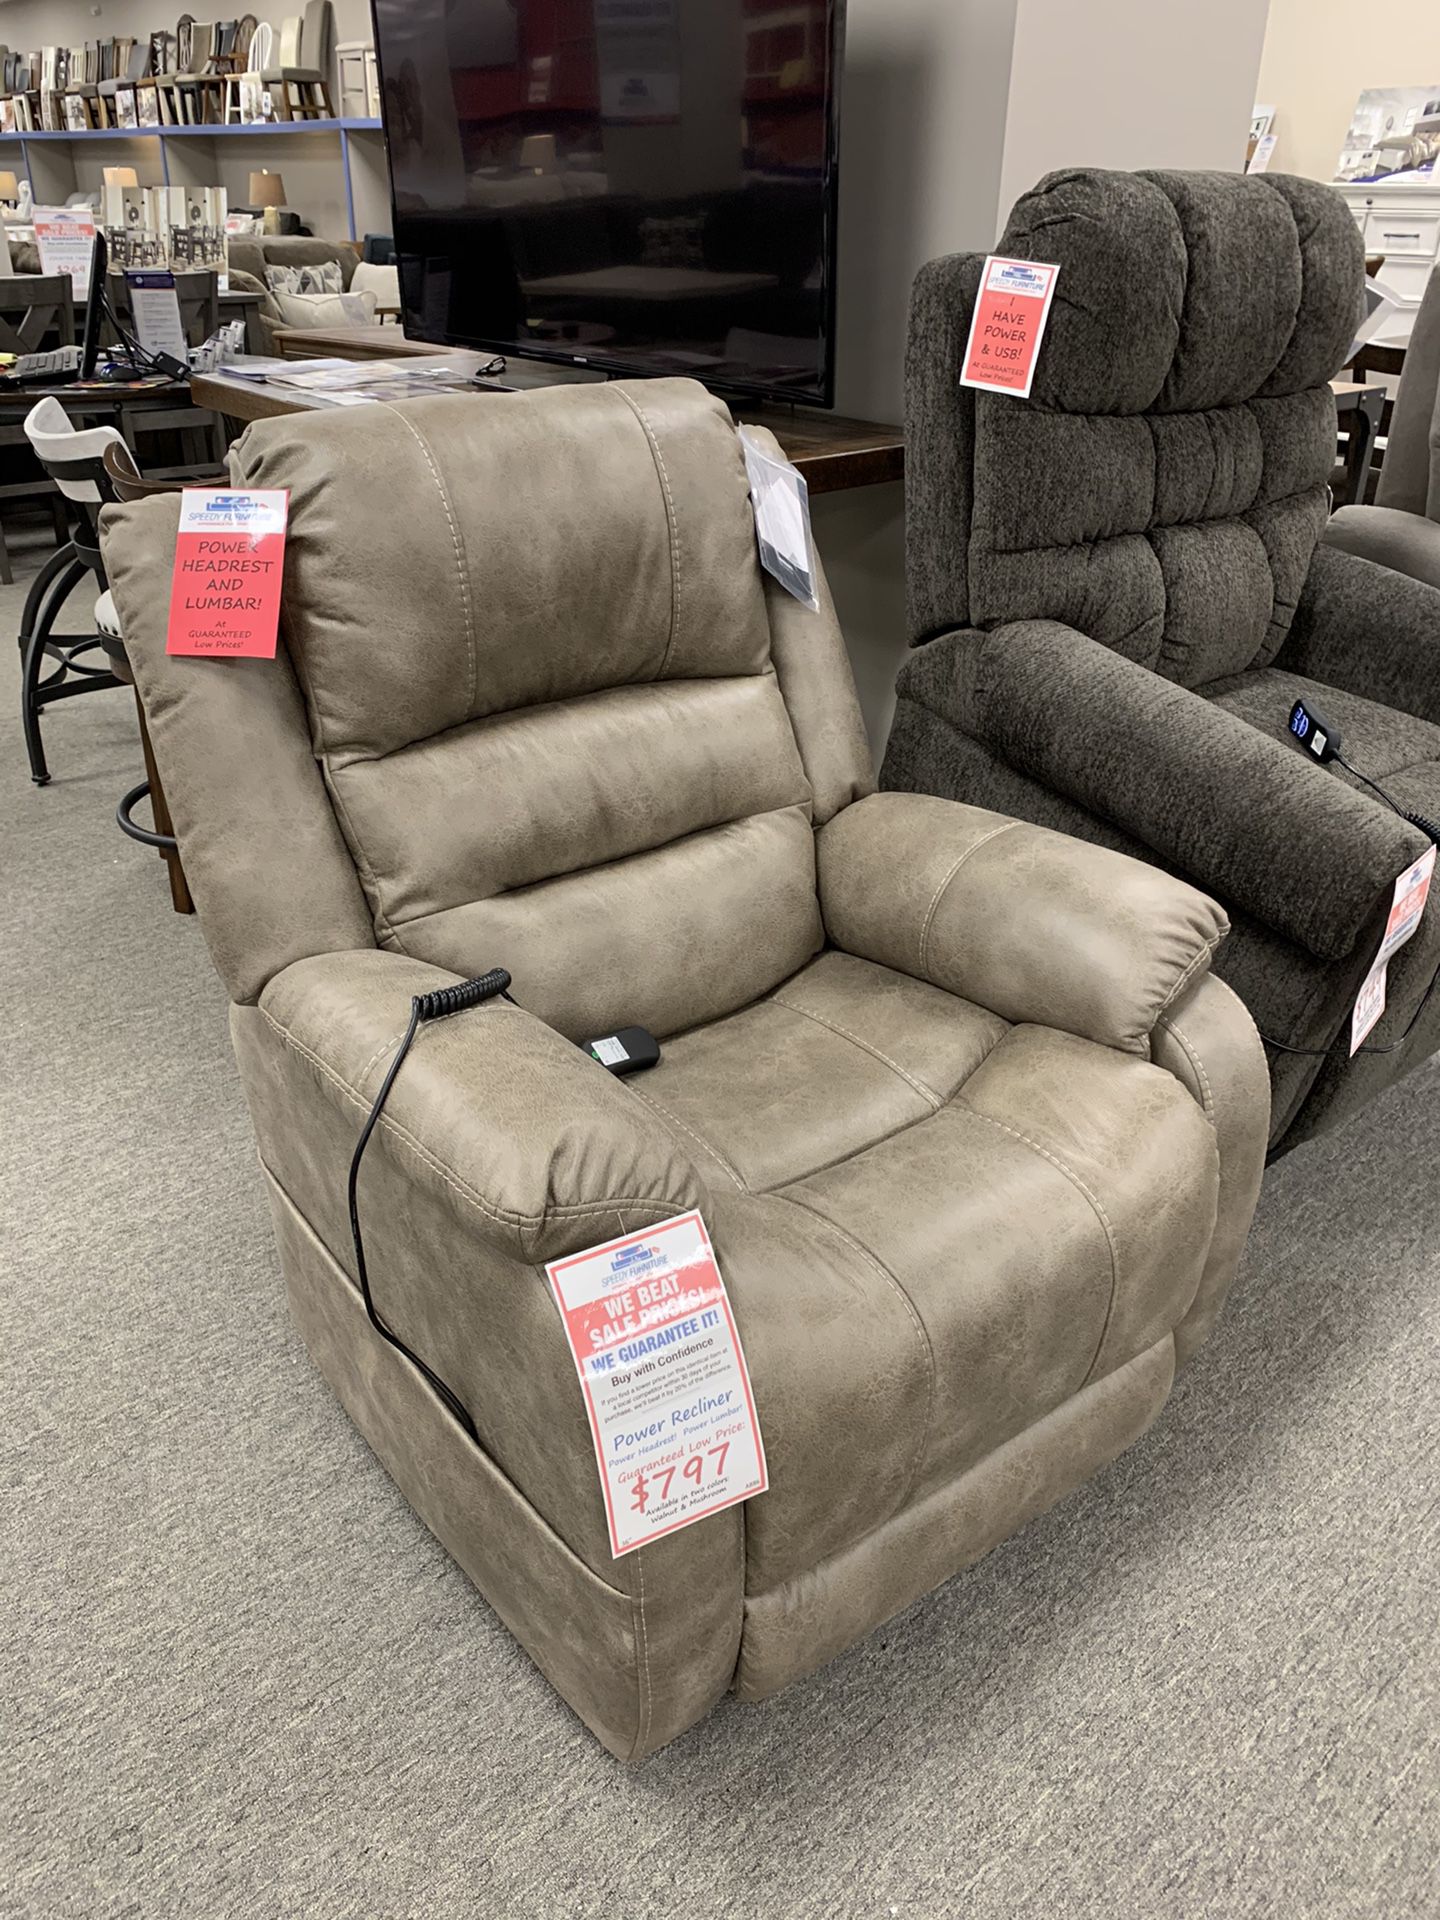 Speedy Furniture of Cranberry back stock brand new recliner - power recline lumbar headrest